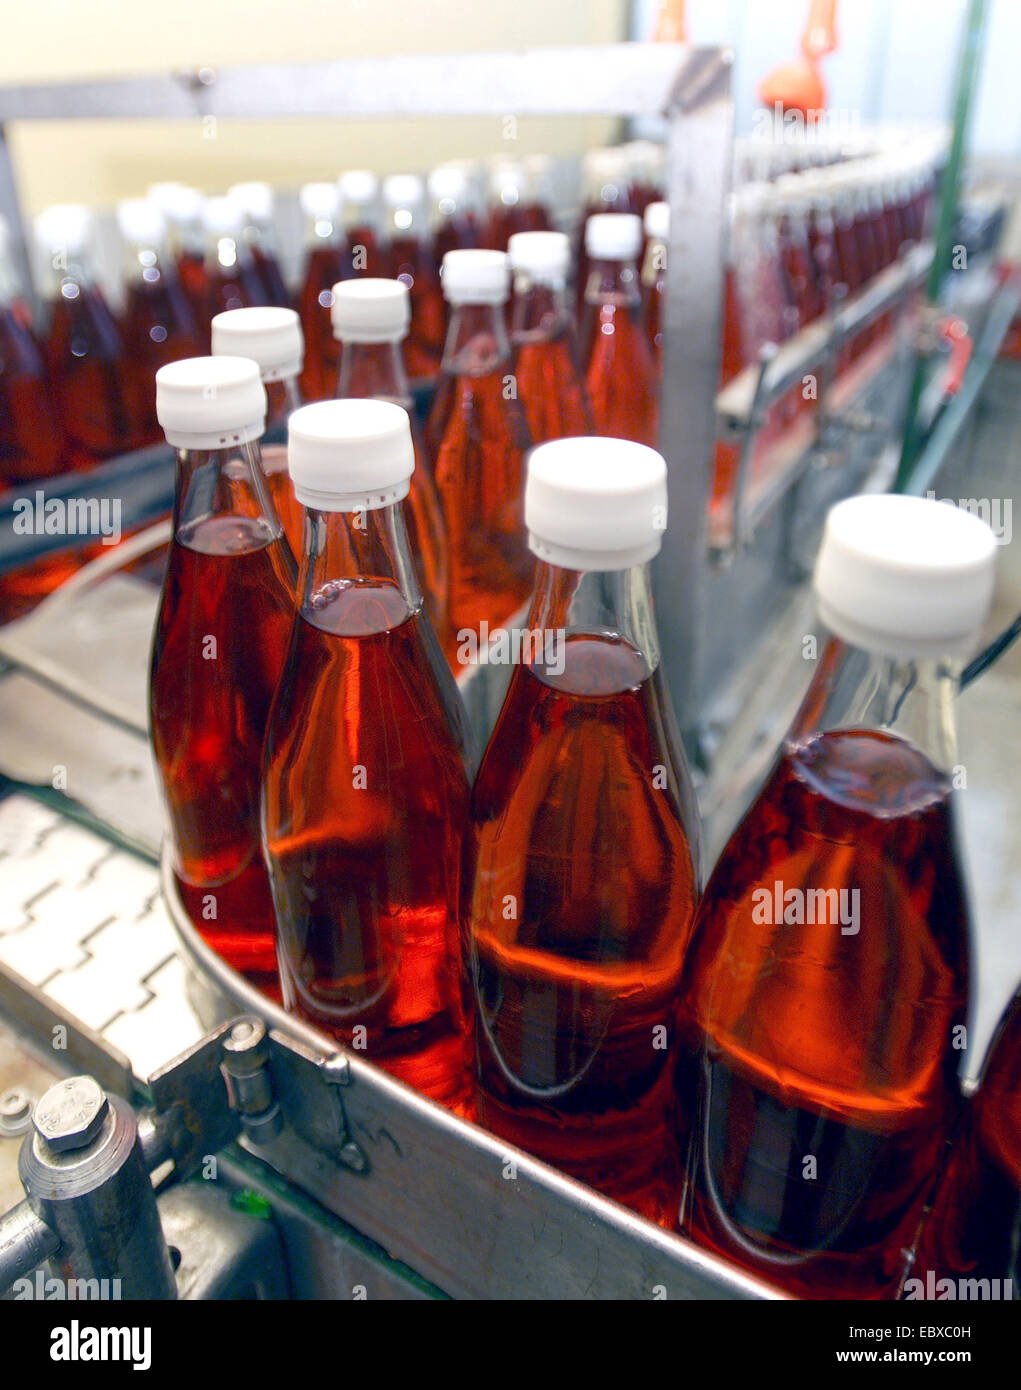 bottling plant with softdrink bottles Stock Photo